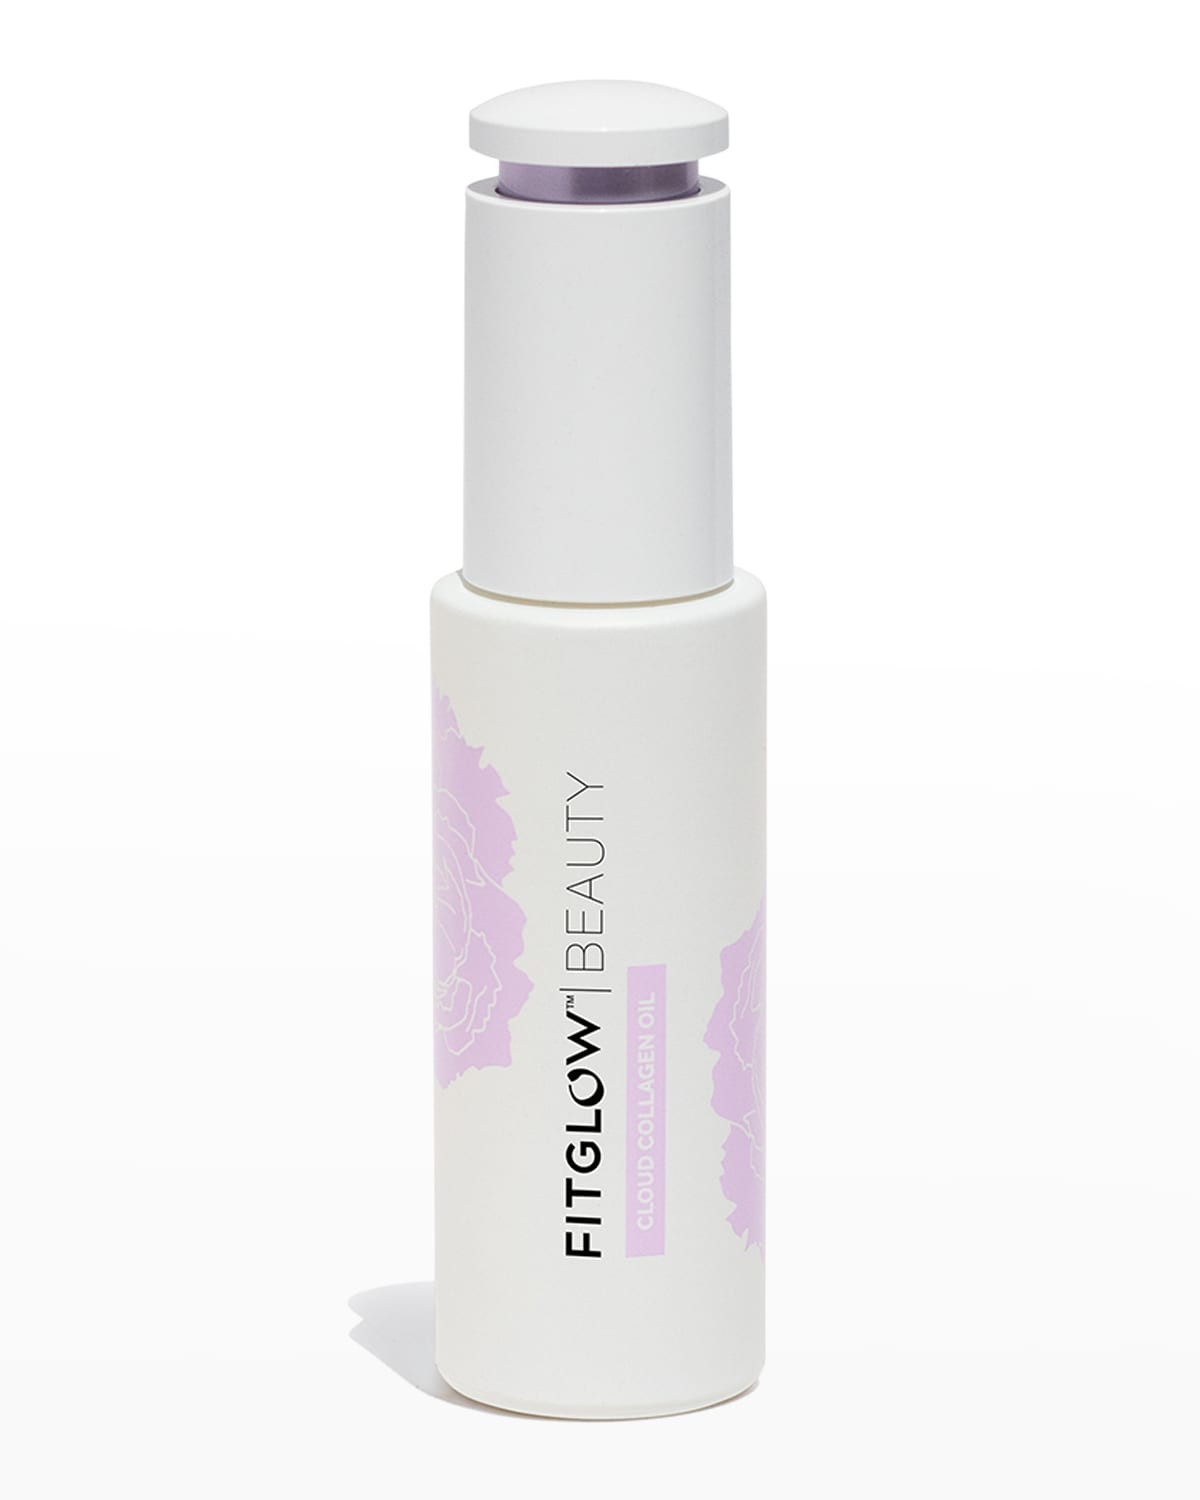 Fitglow Beauty 1 oz. Cloud Collagen Oil